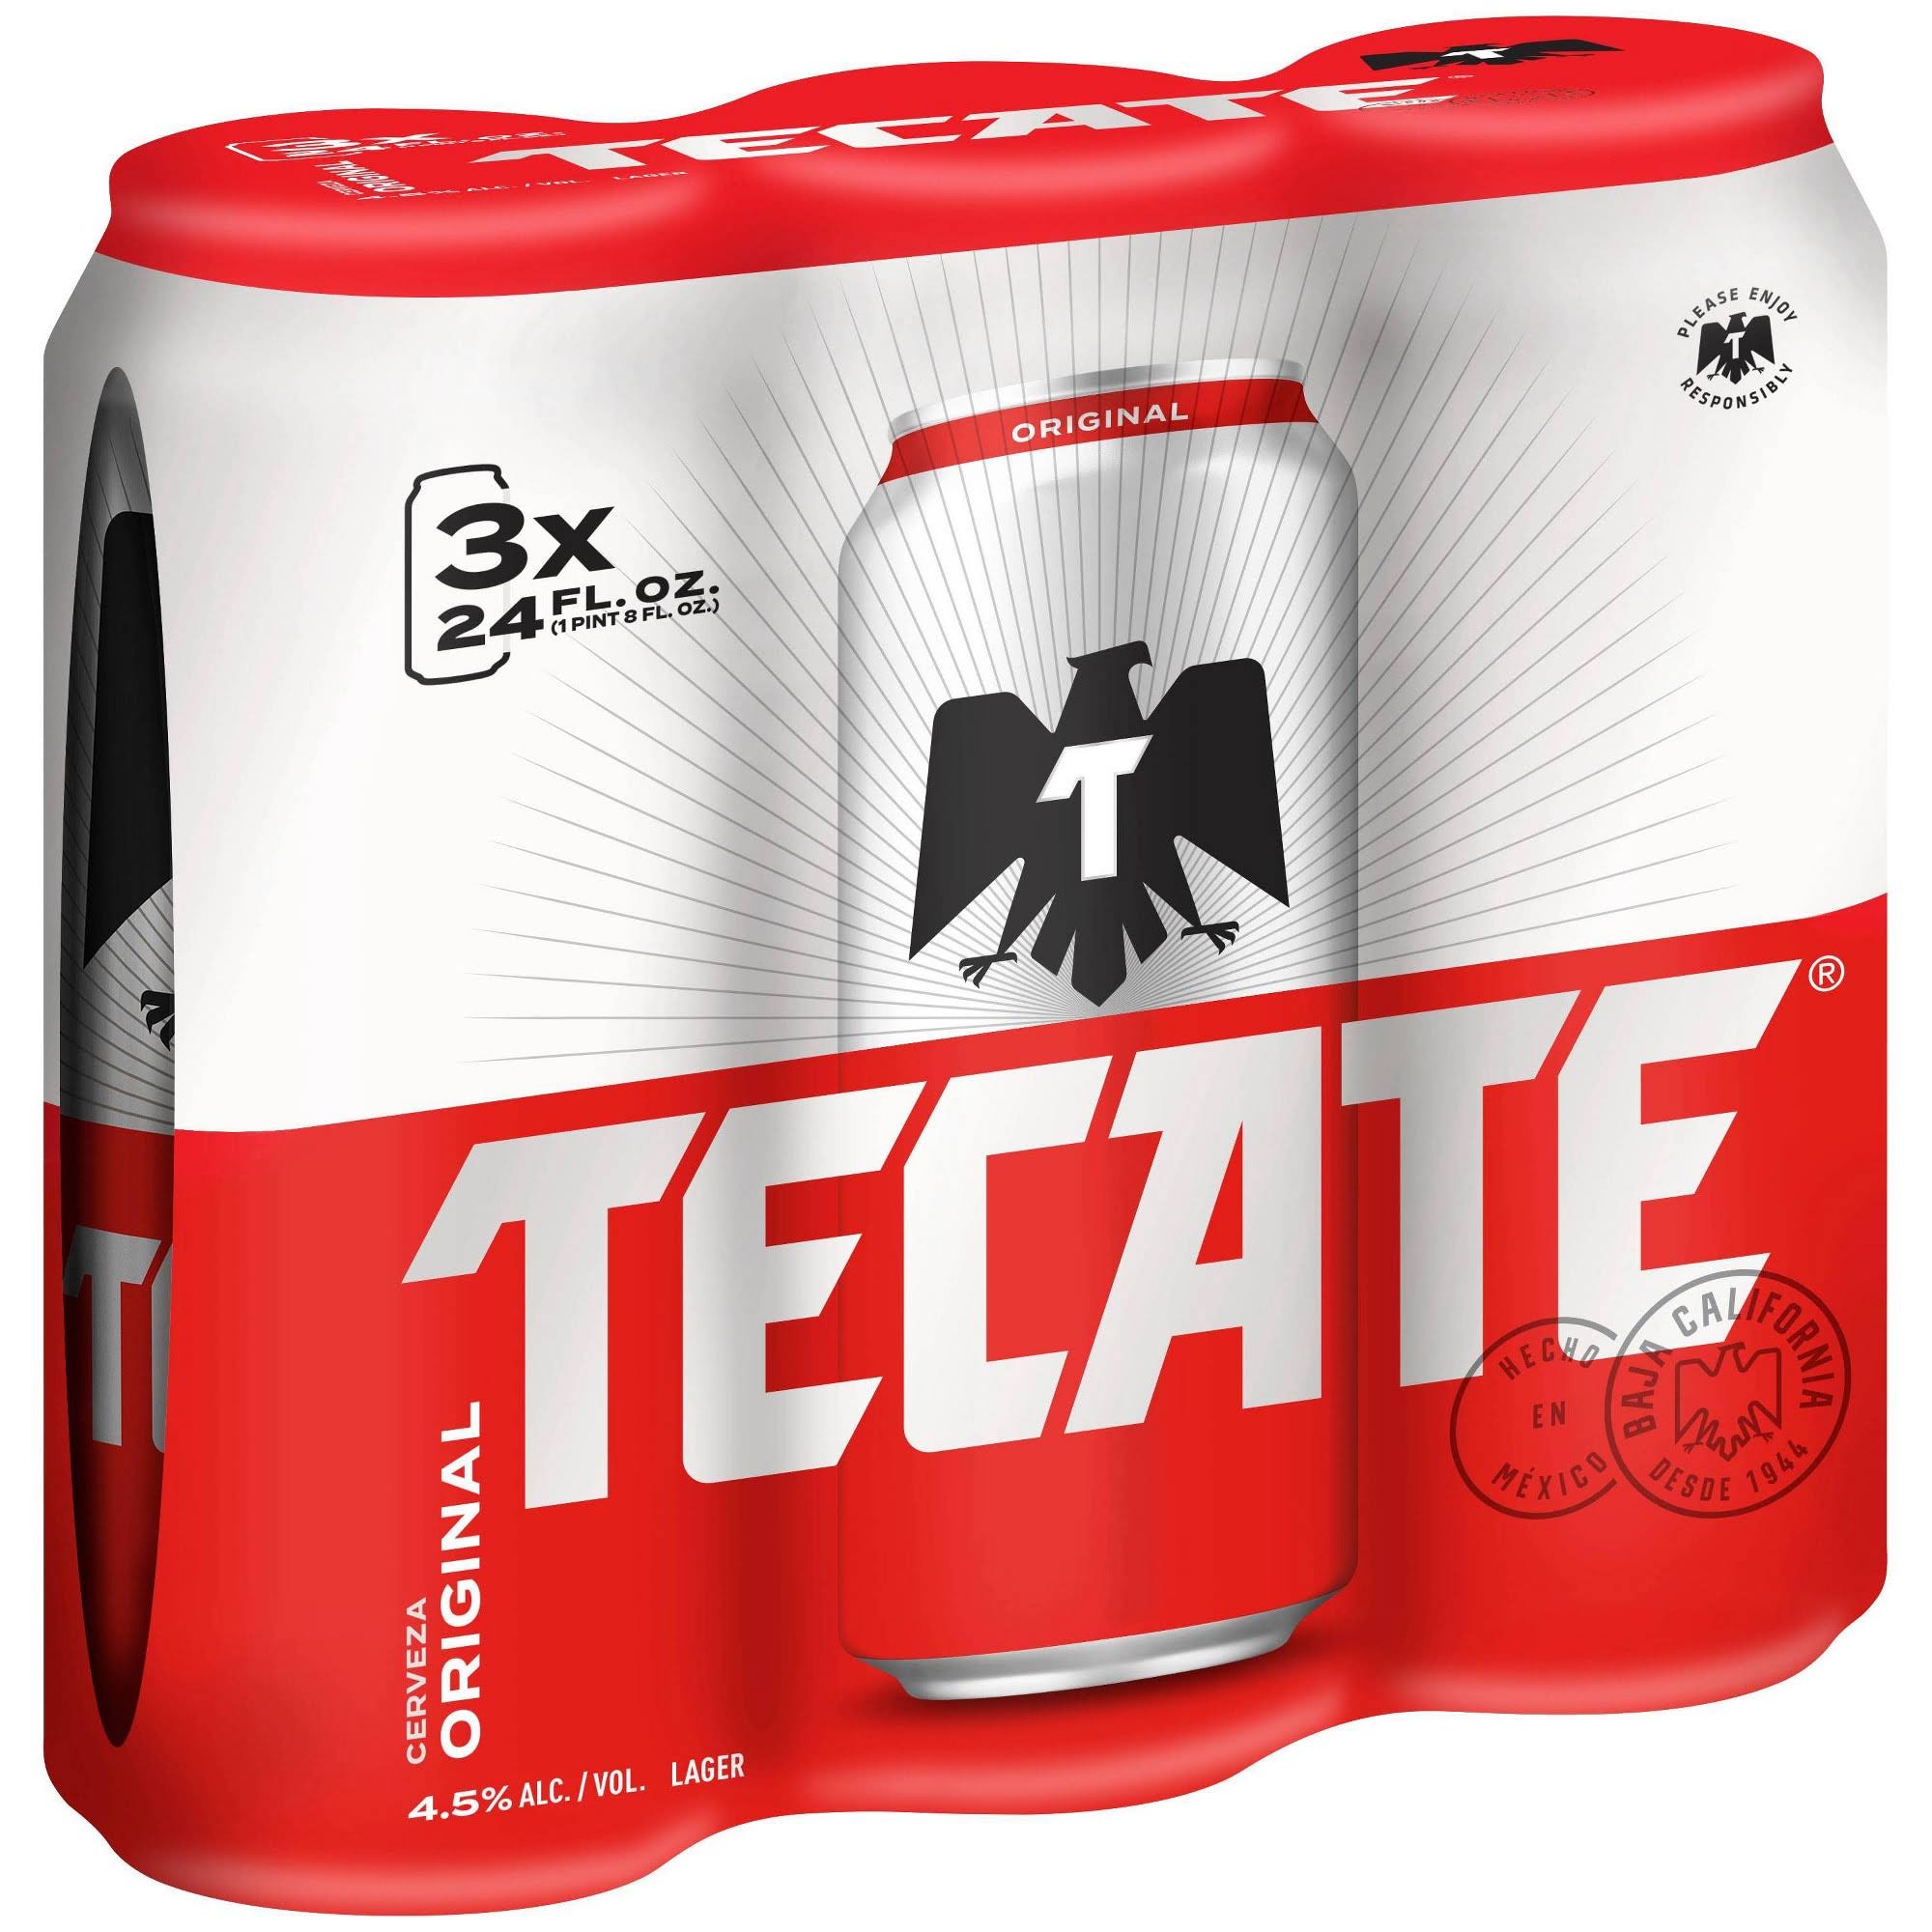 Tecate Beer - x3